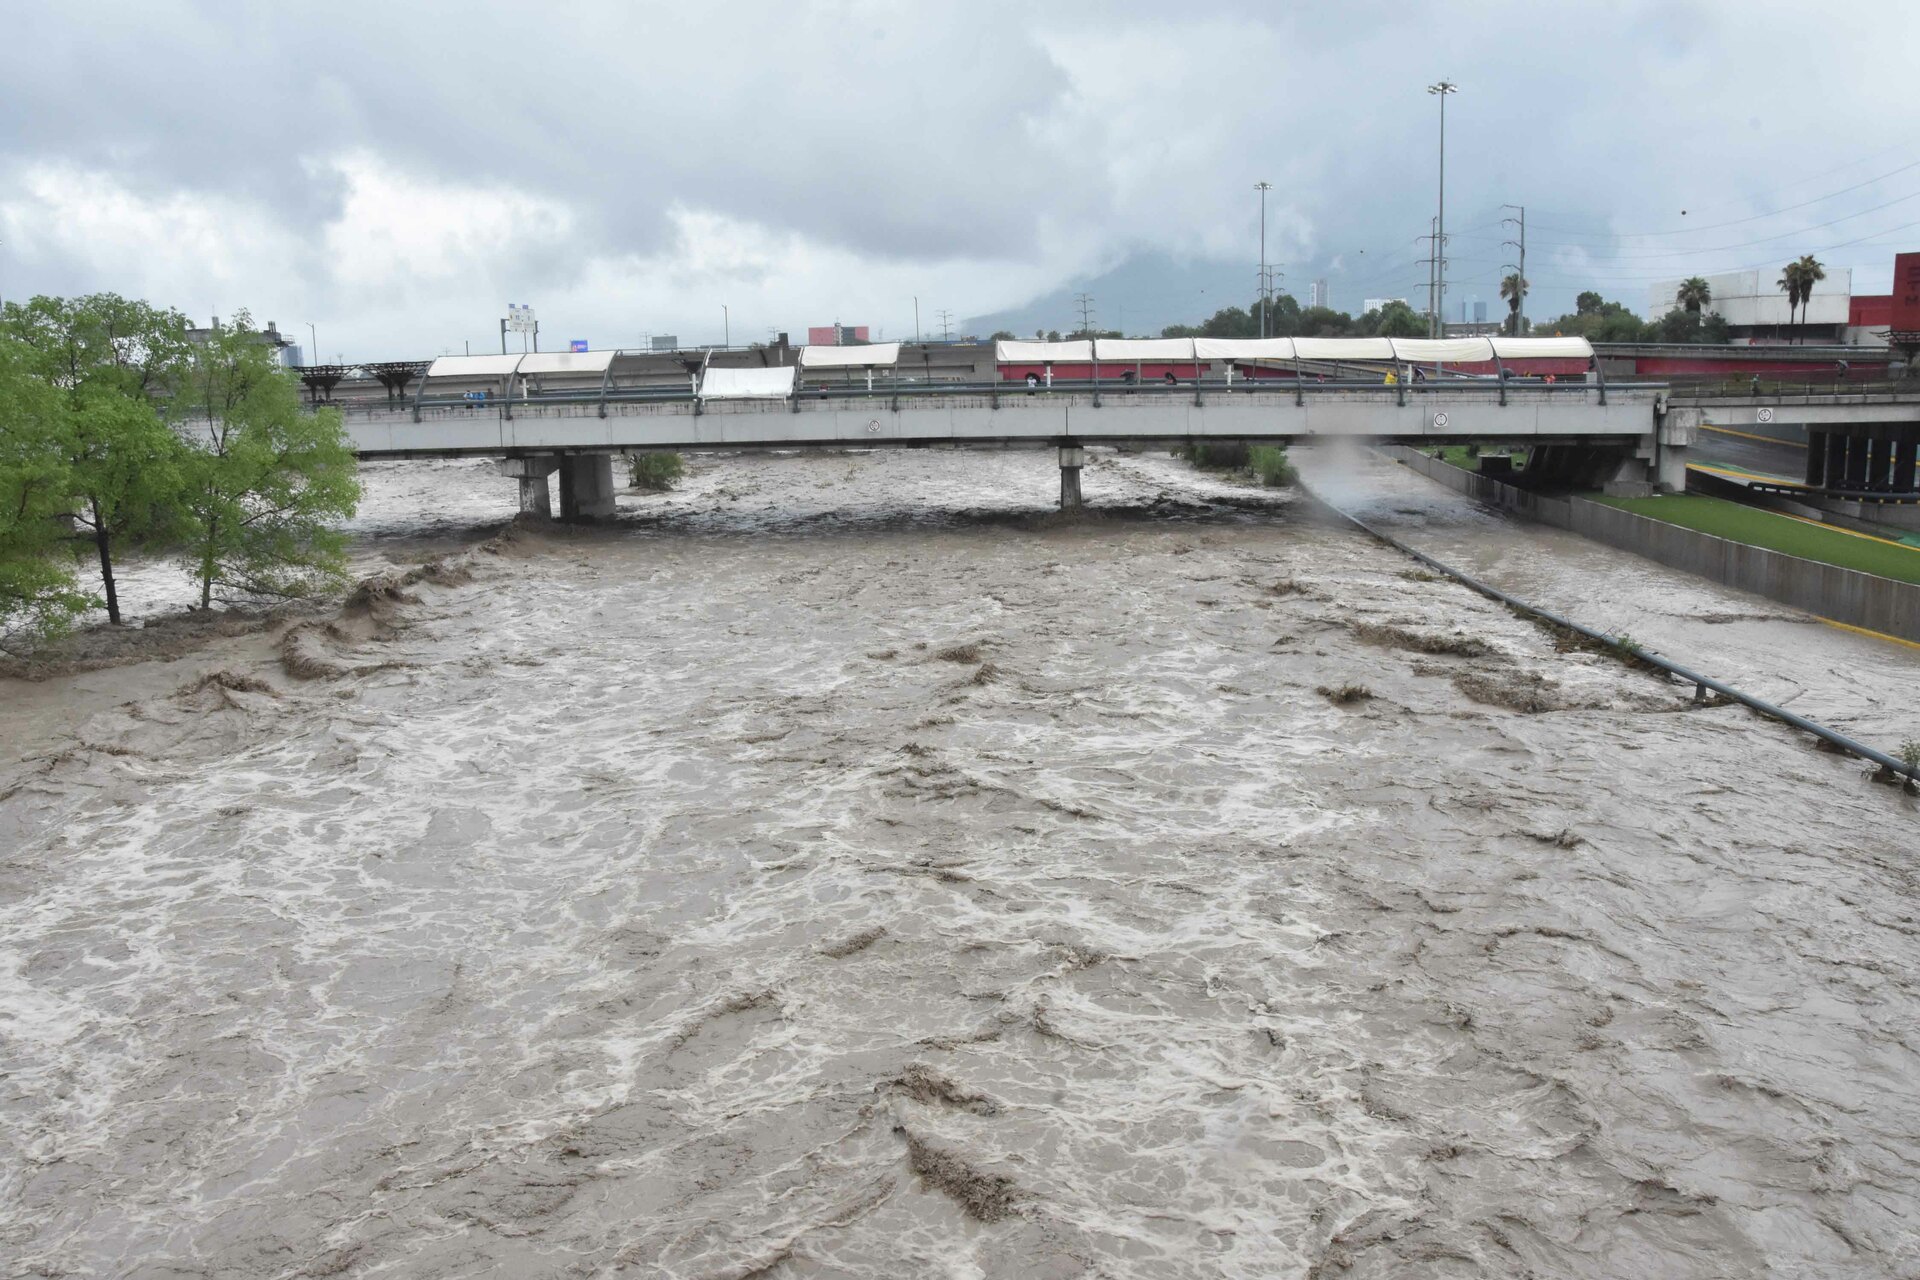 Estragos de Tormenta Tropical Alberto en Nuevo León. 